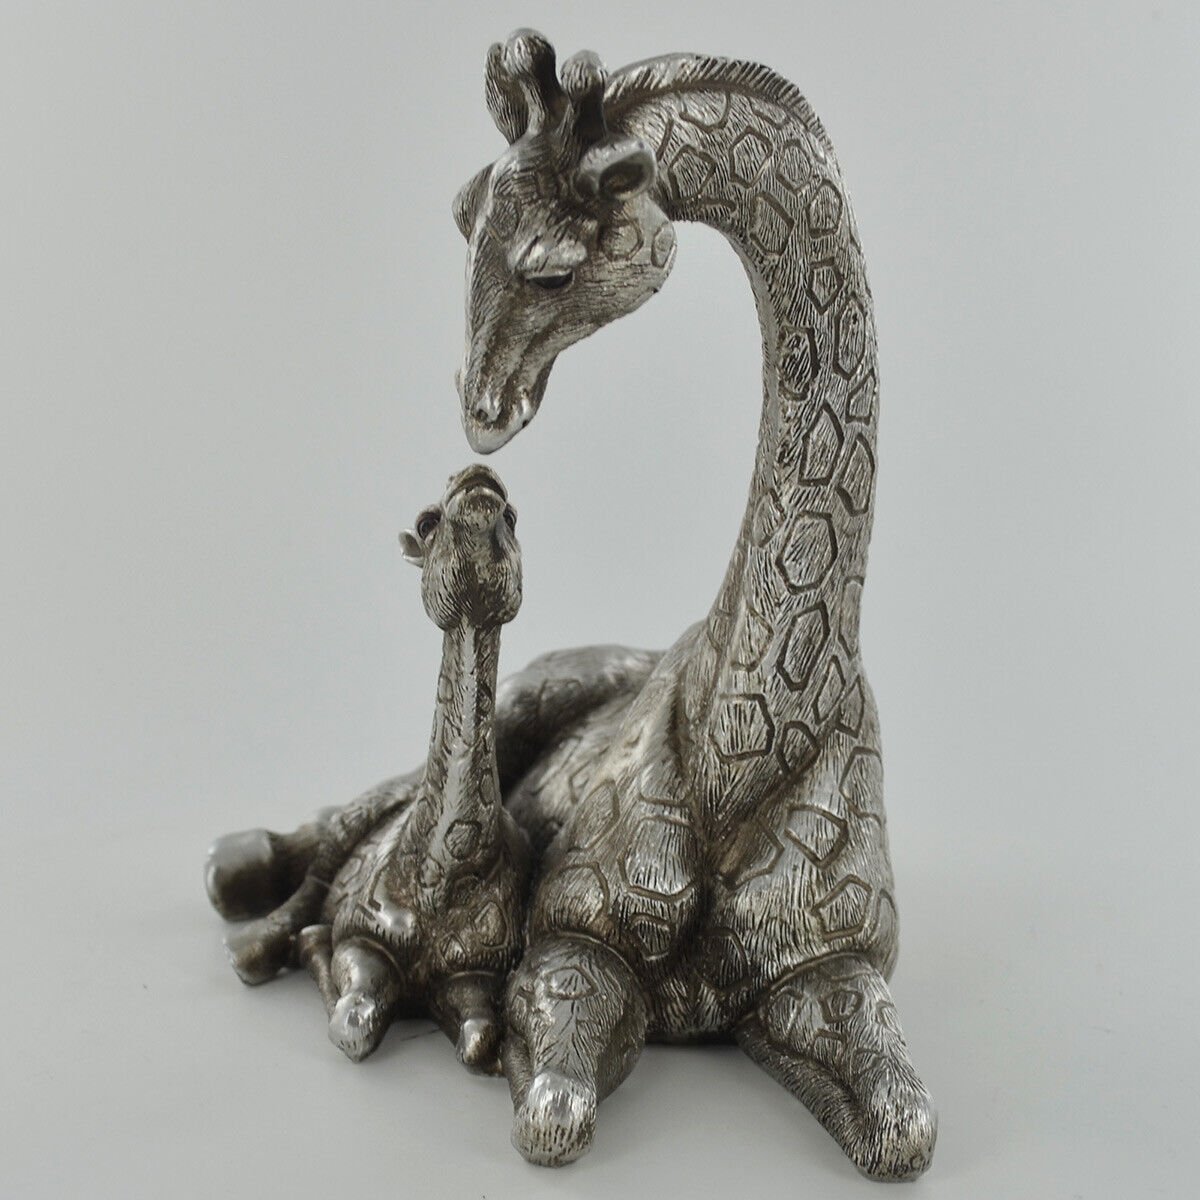 Giraffe Family Ornament In Antique Silver Finish